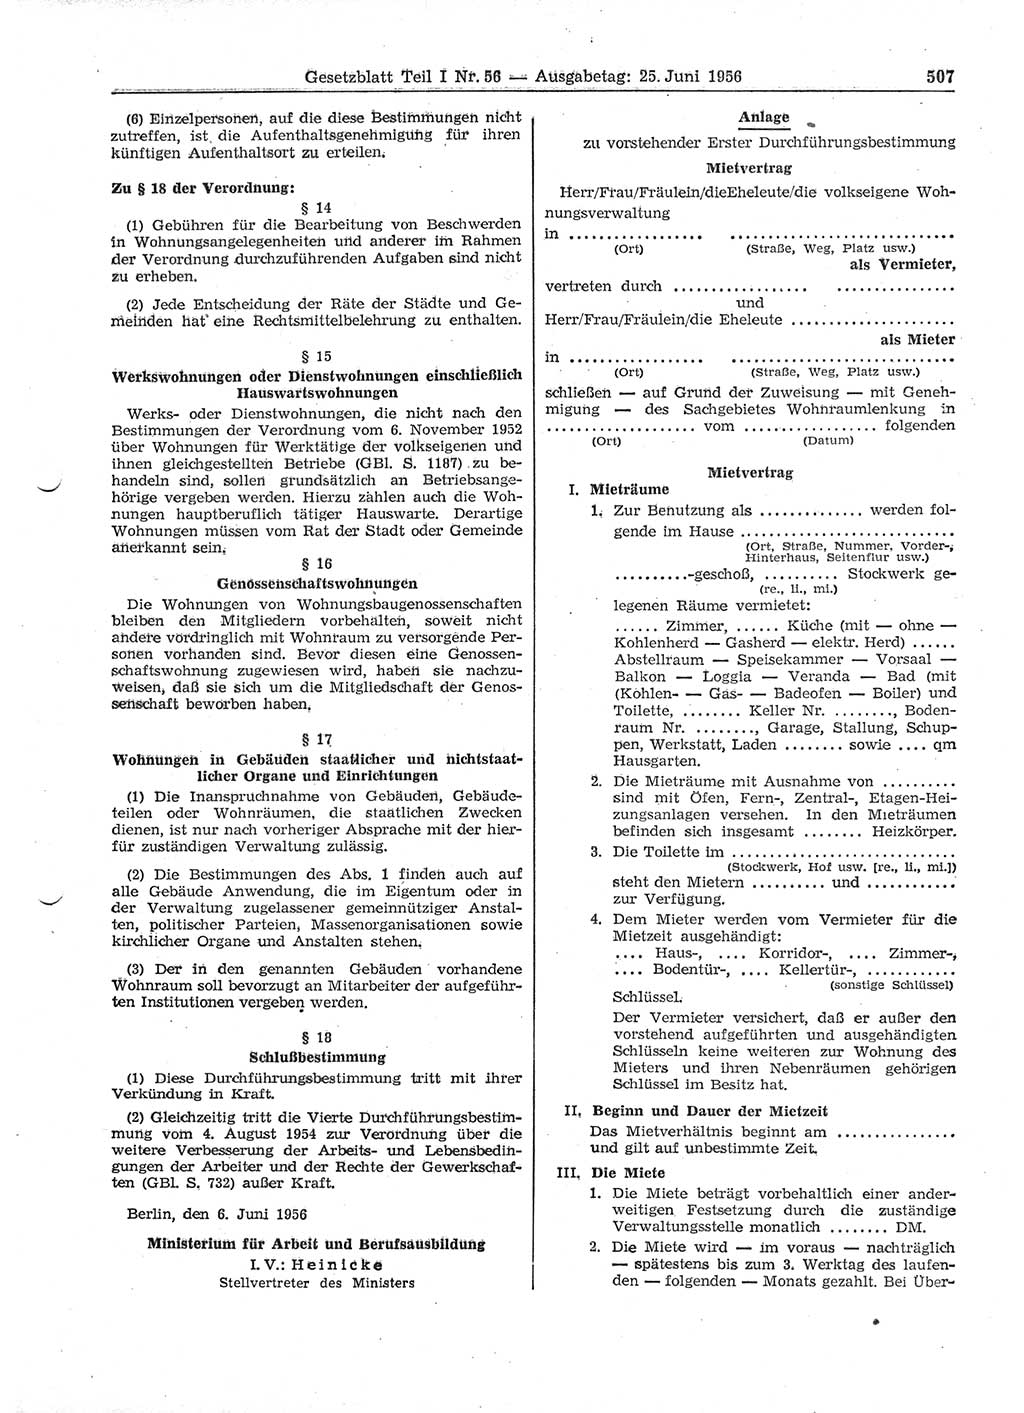 Gesetzblatt (GBl.) der Deutschen Demokratischen Republik (DDR) Teil Ⅰ 1956, Seite 507 (GBl. DDR Ⅰ 1956, S. 507)